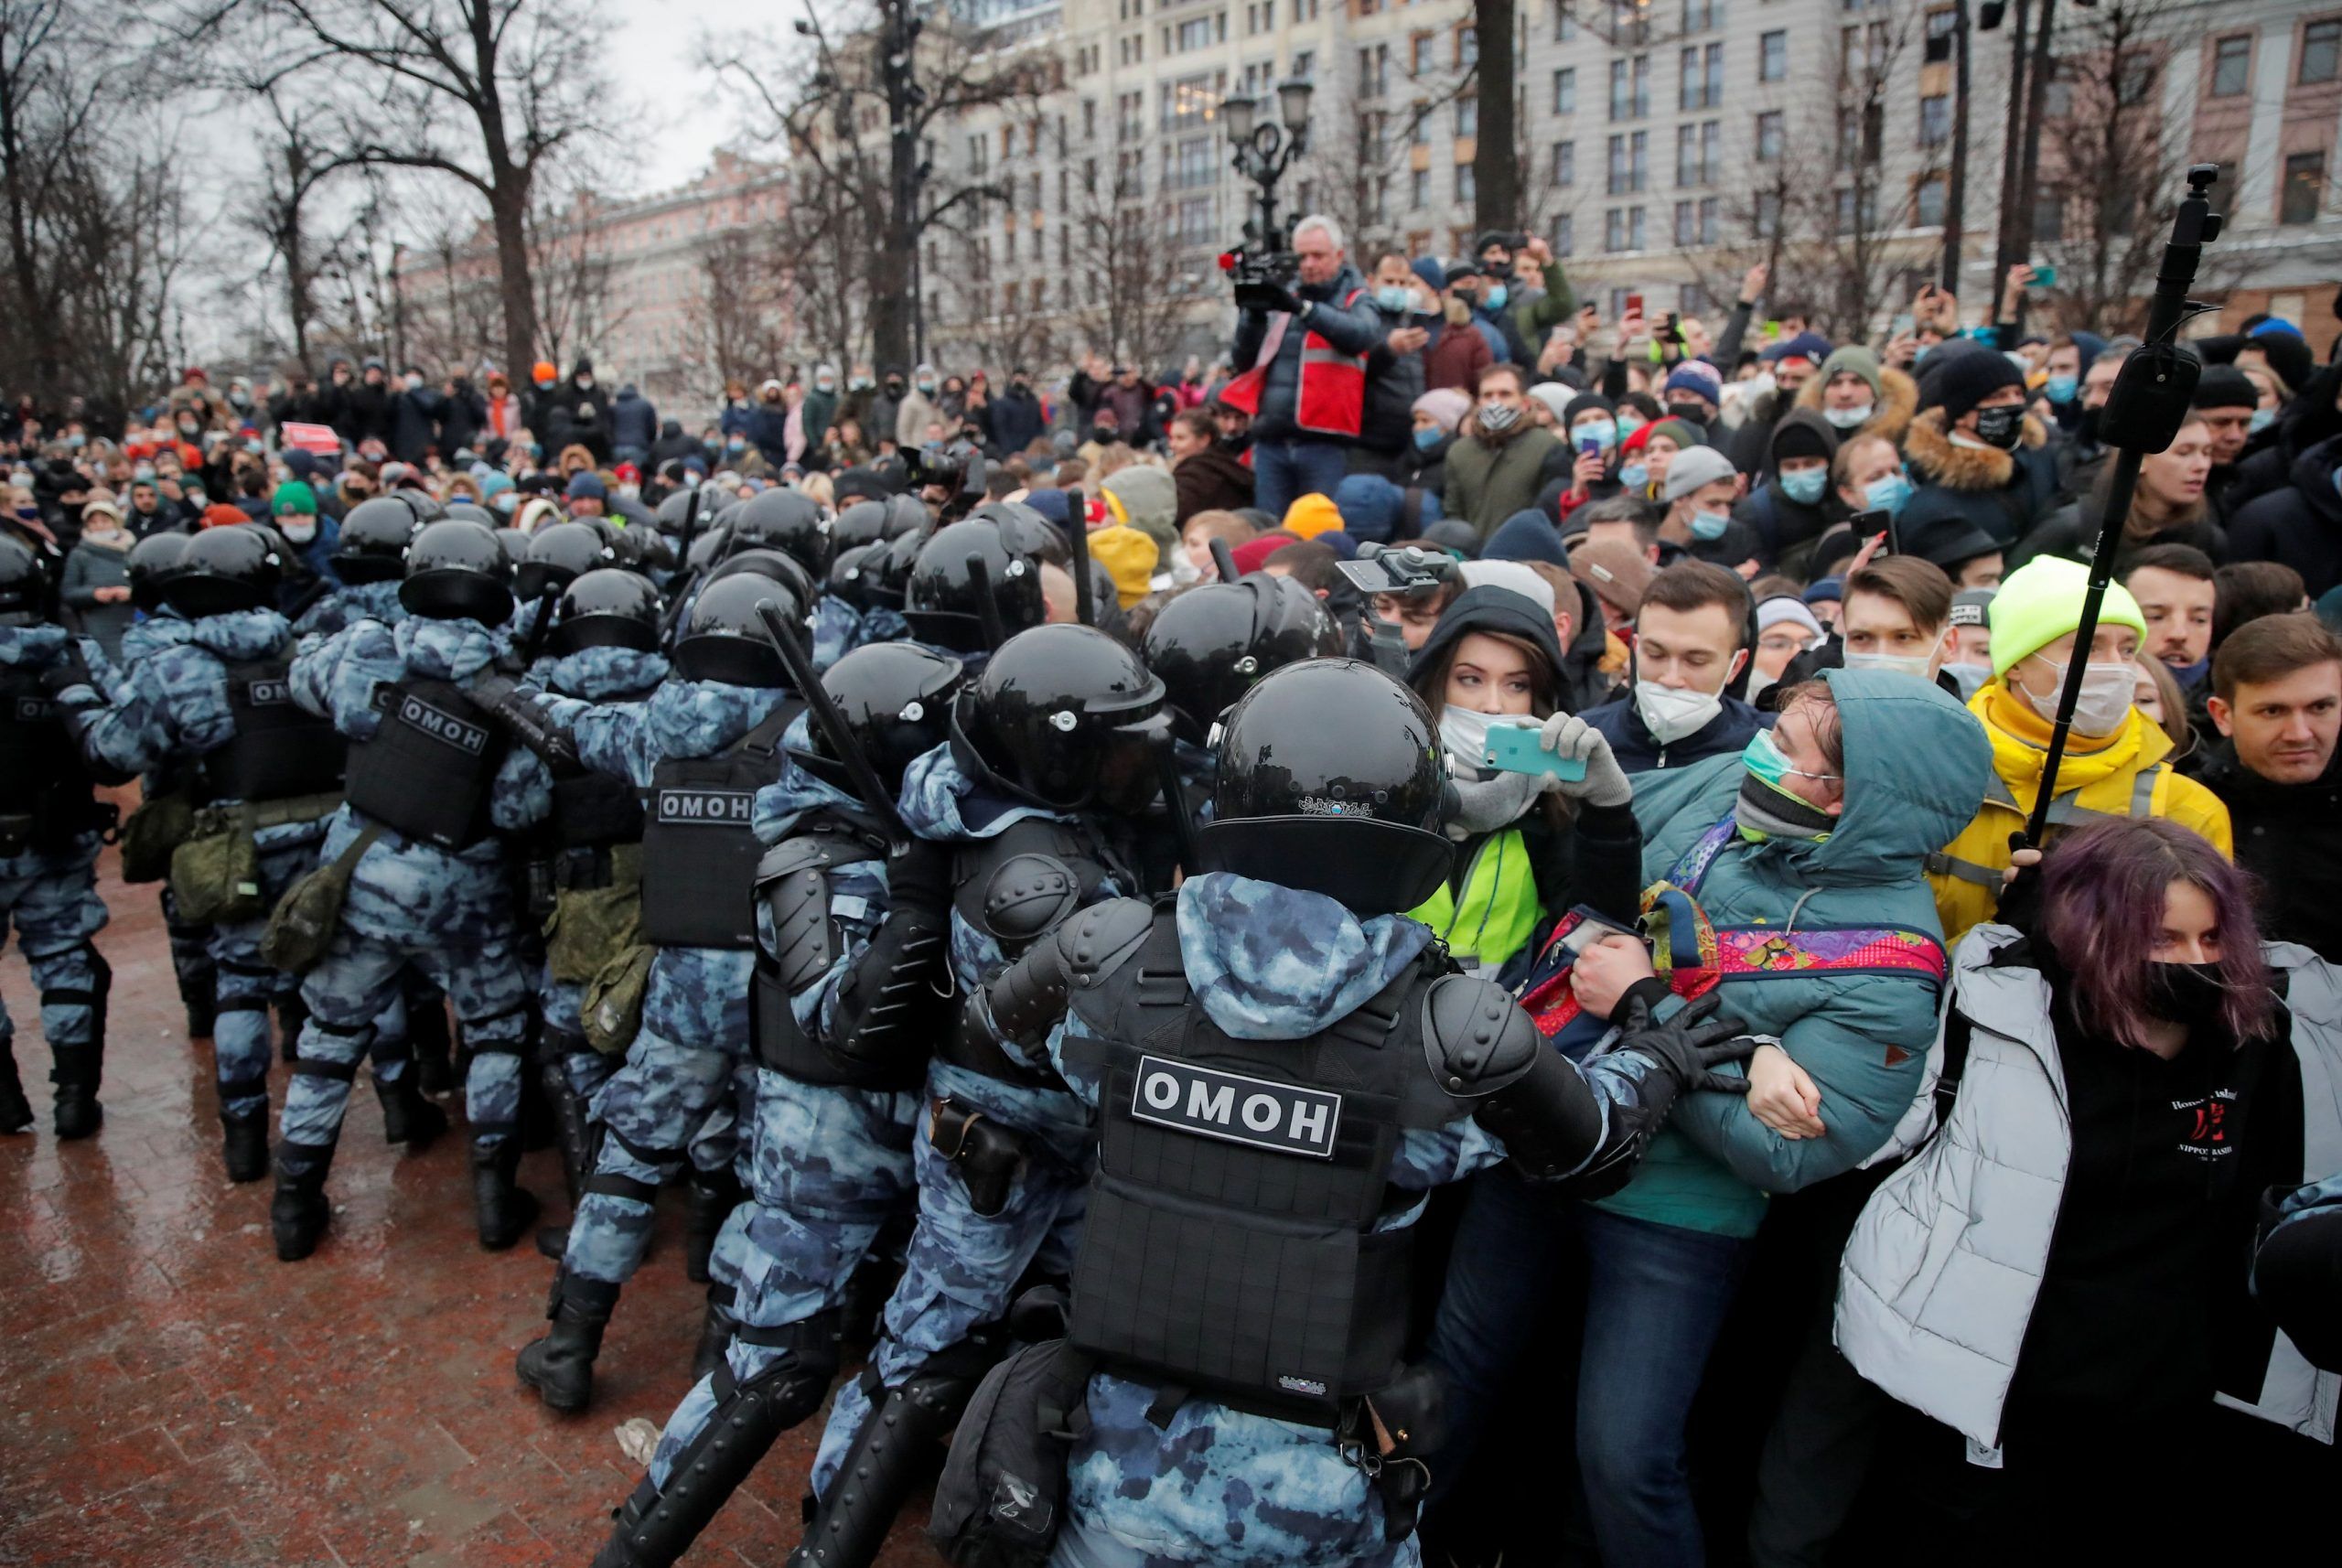 Ще нікому не вдалось повалити режим, – журналіст про протести у Росії